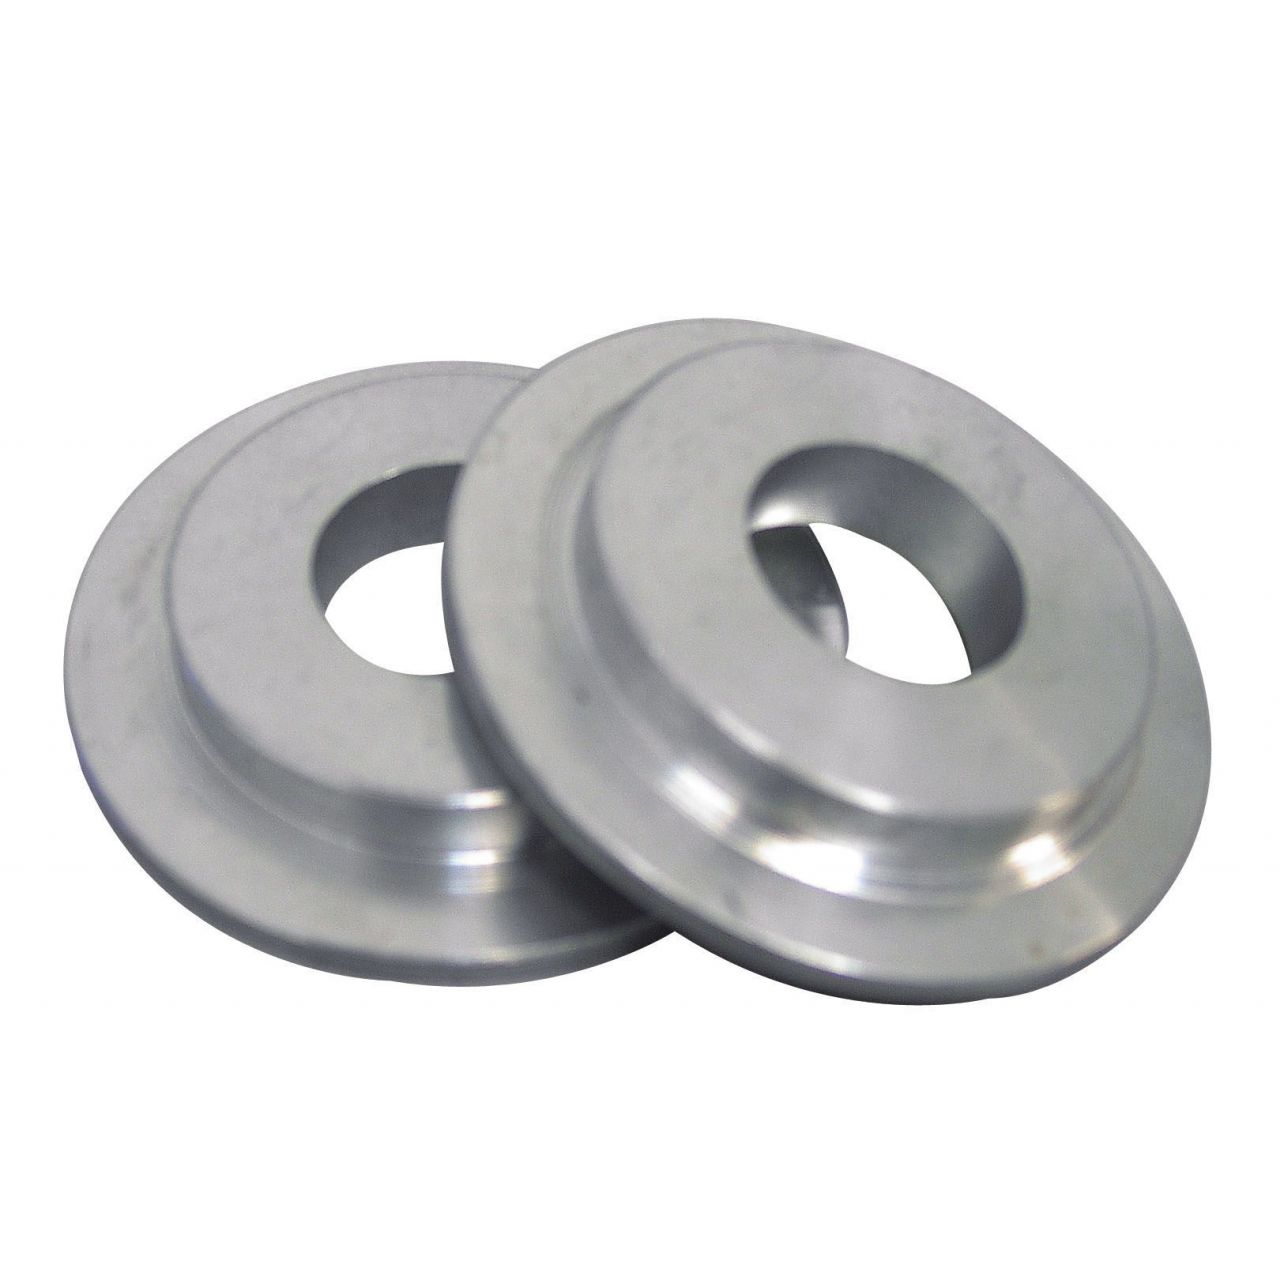 Bridas reductoras (Medidas 50-25 mm; Material Aluminio)